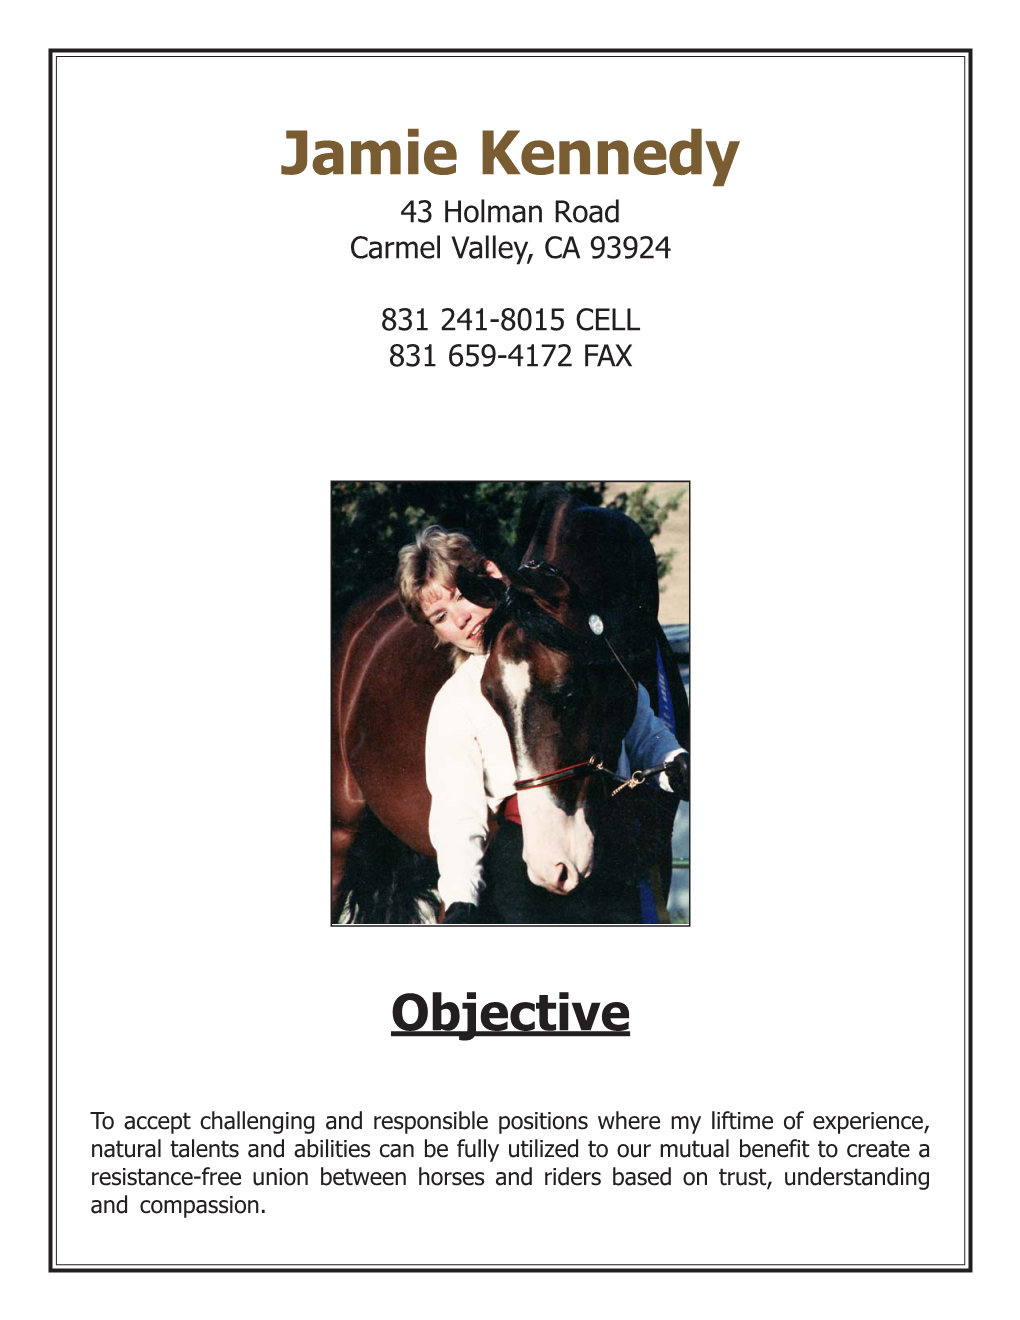 Jamie's Resume